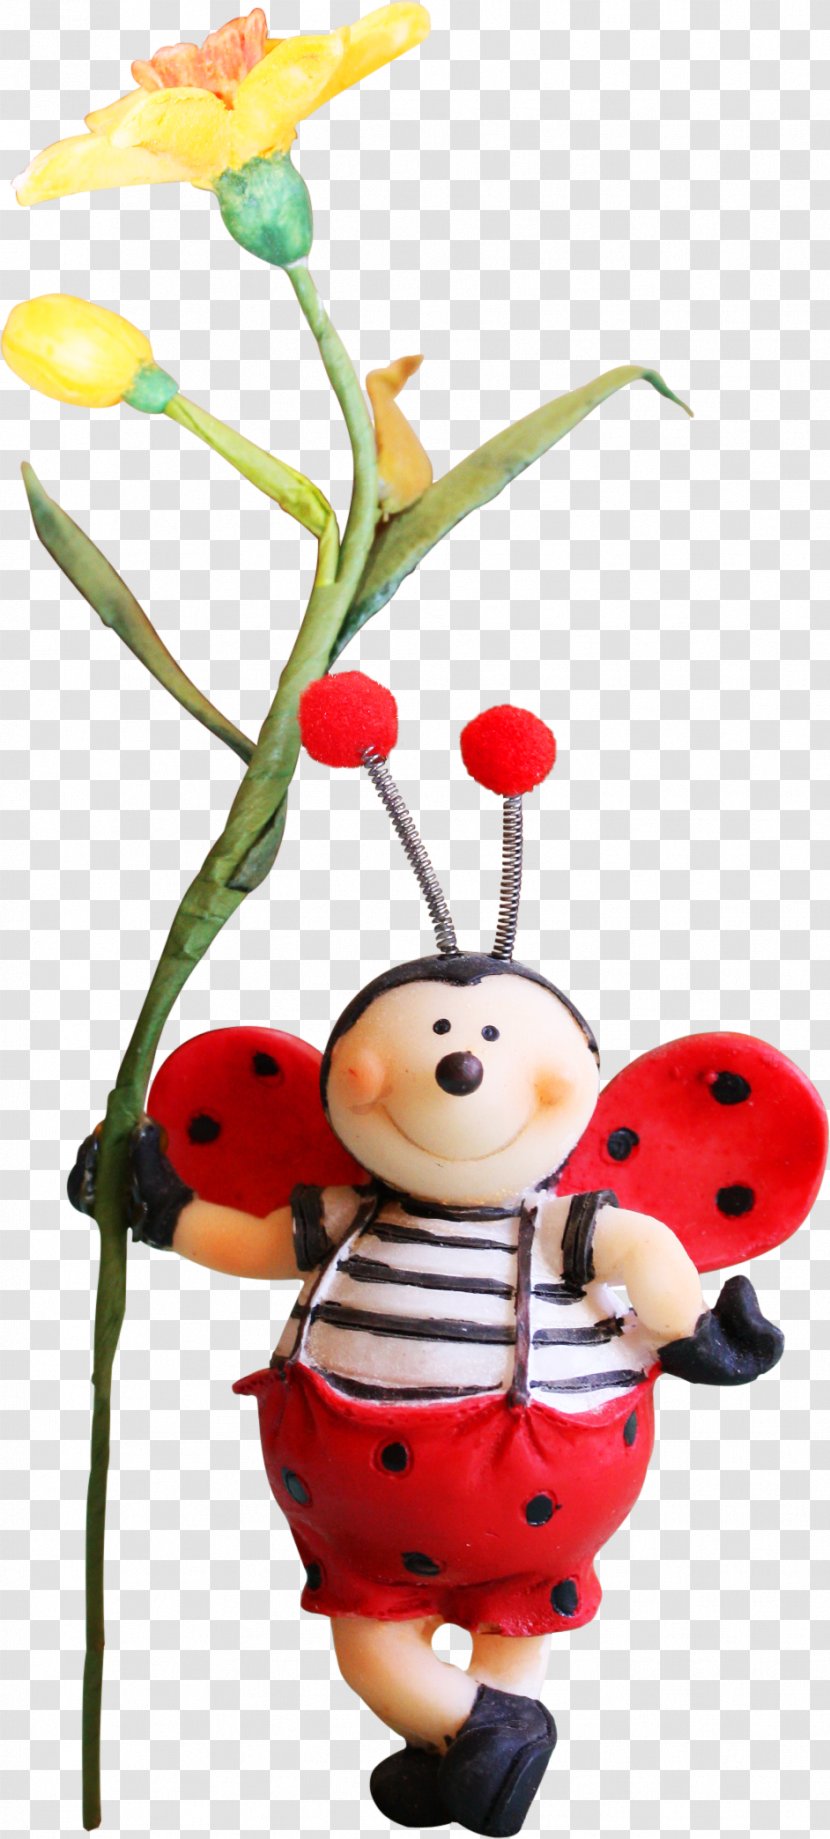 Beetle Ladybird Euclidean Vector - Branch - Ladybug Transparent PNG